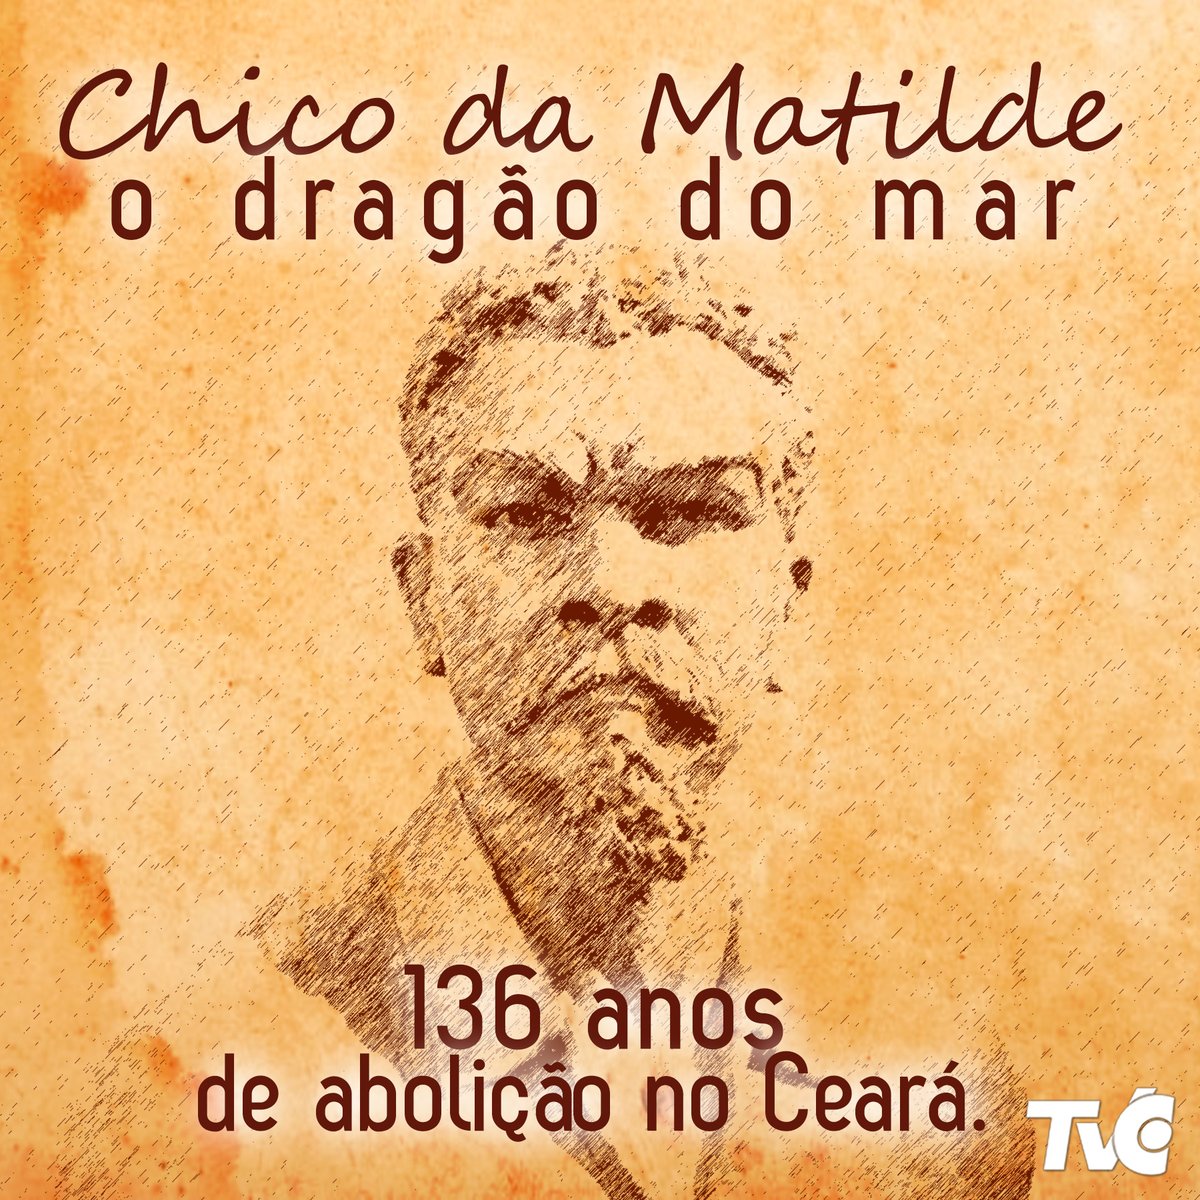 TV Ceará on Twitter: "Hoje celebramos o dia da abolição da escravatura no Brasil. O que poucos sabem, é que o Ceará foi a primeira província do país a libertar os escravos,